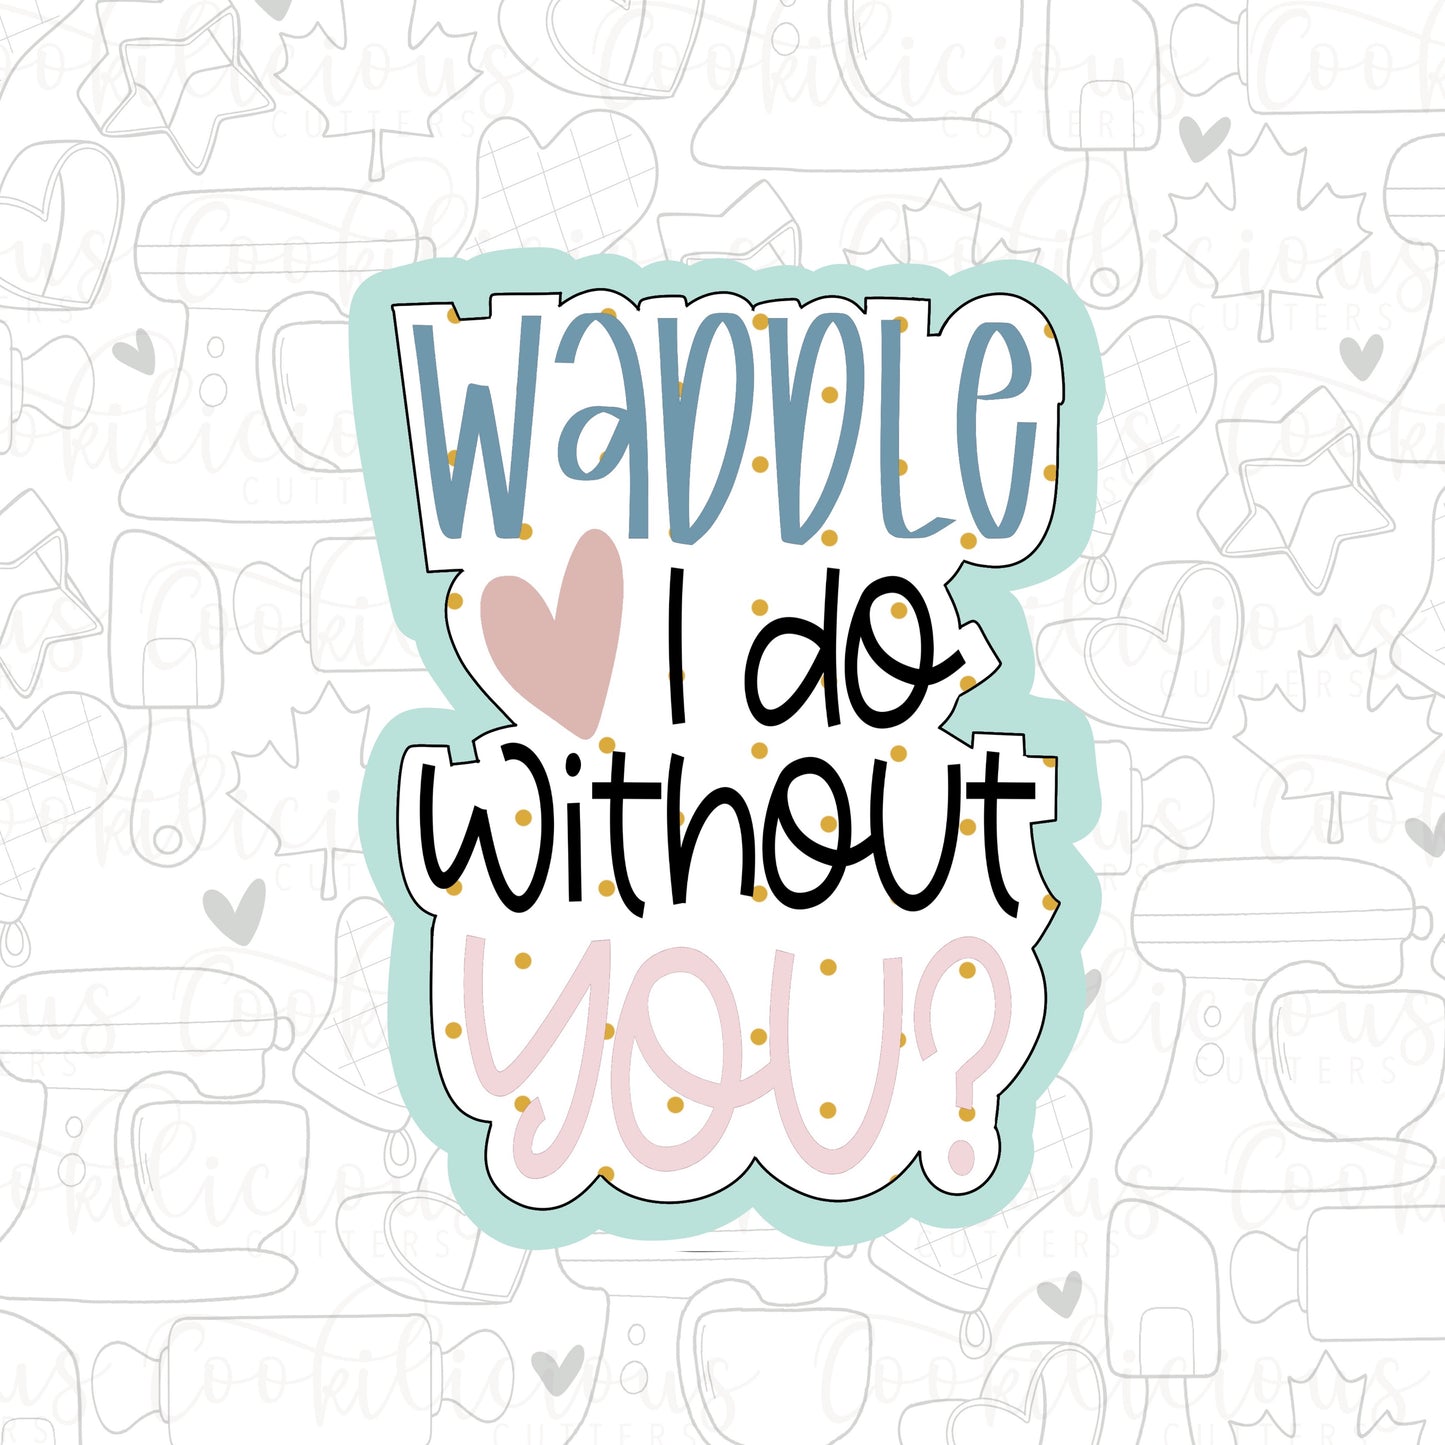 Waddle I Do Without You